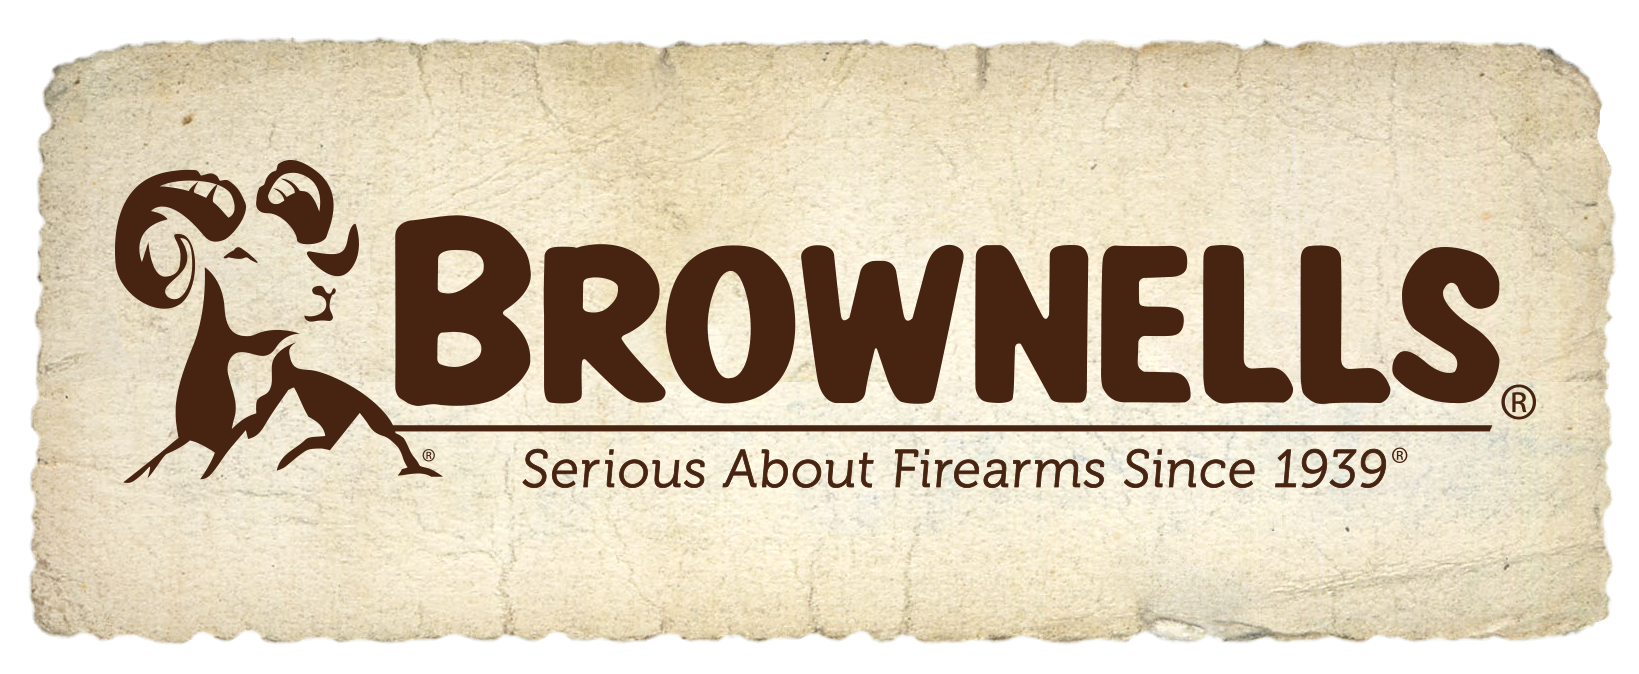 Image result for brownells logo